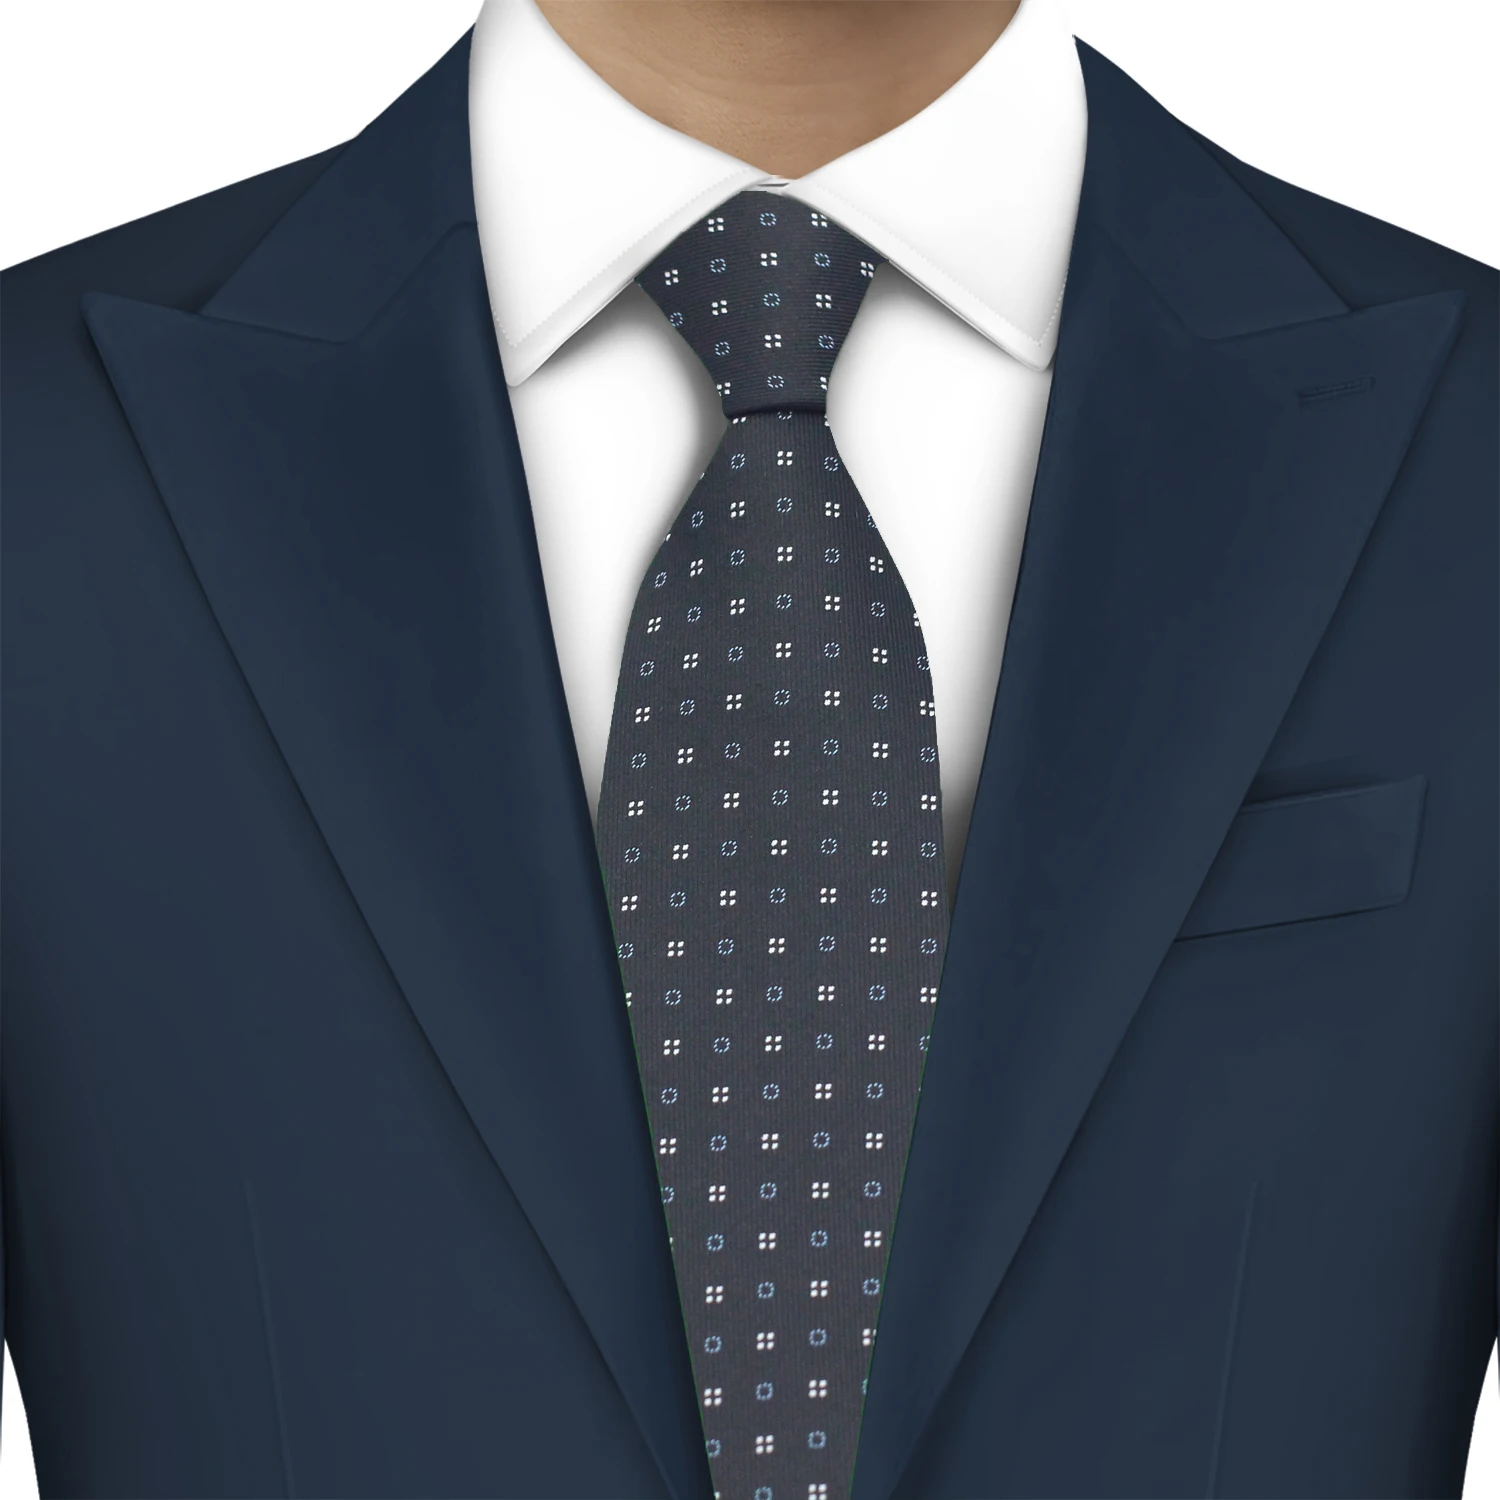 

LYL 8 см Черные новые галстуки для мужчин в горошек модная мужская деловая встреча свадебный смокинг костюм рубашка повседневная одежда платок Бесплатная доставка